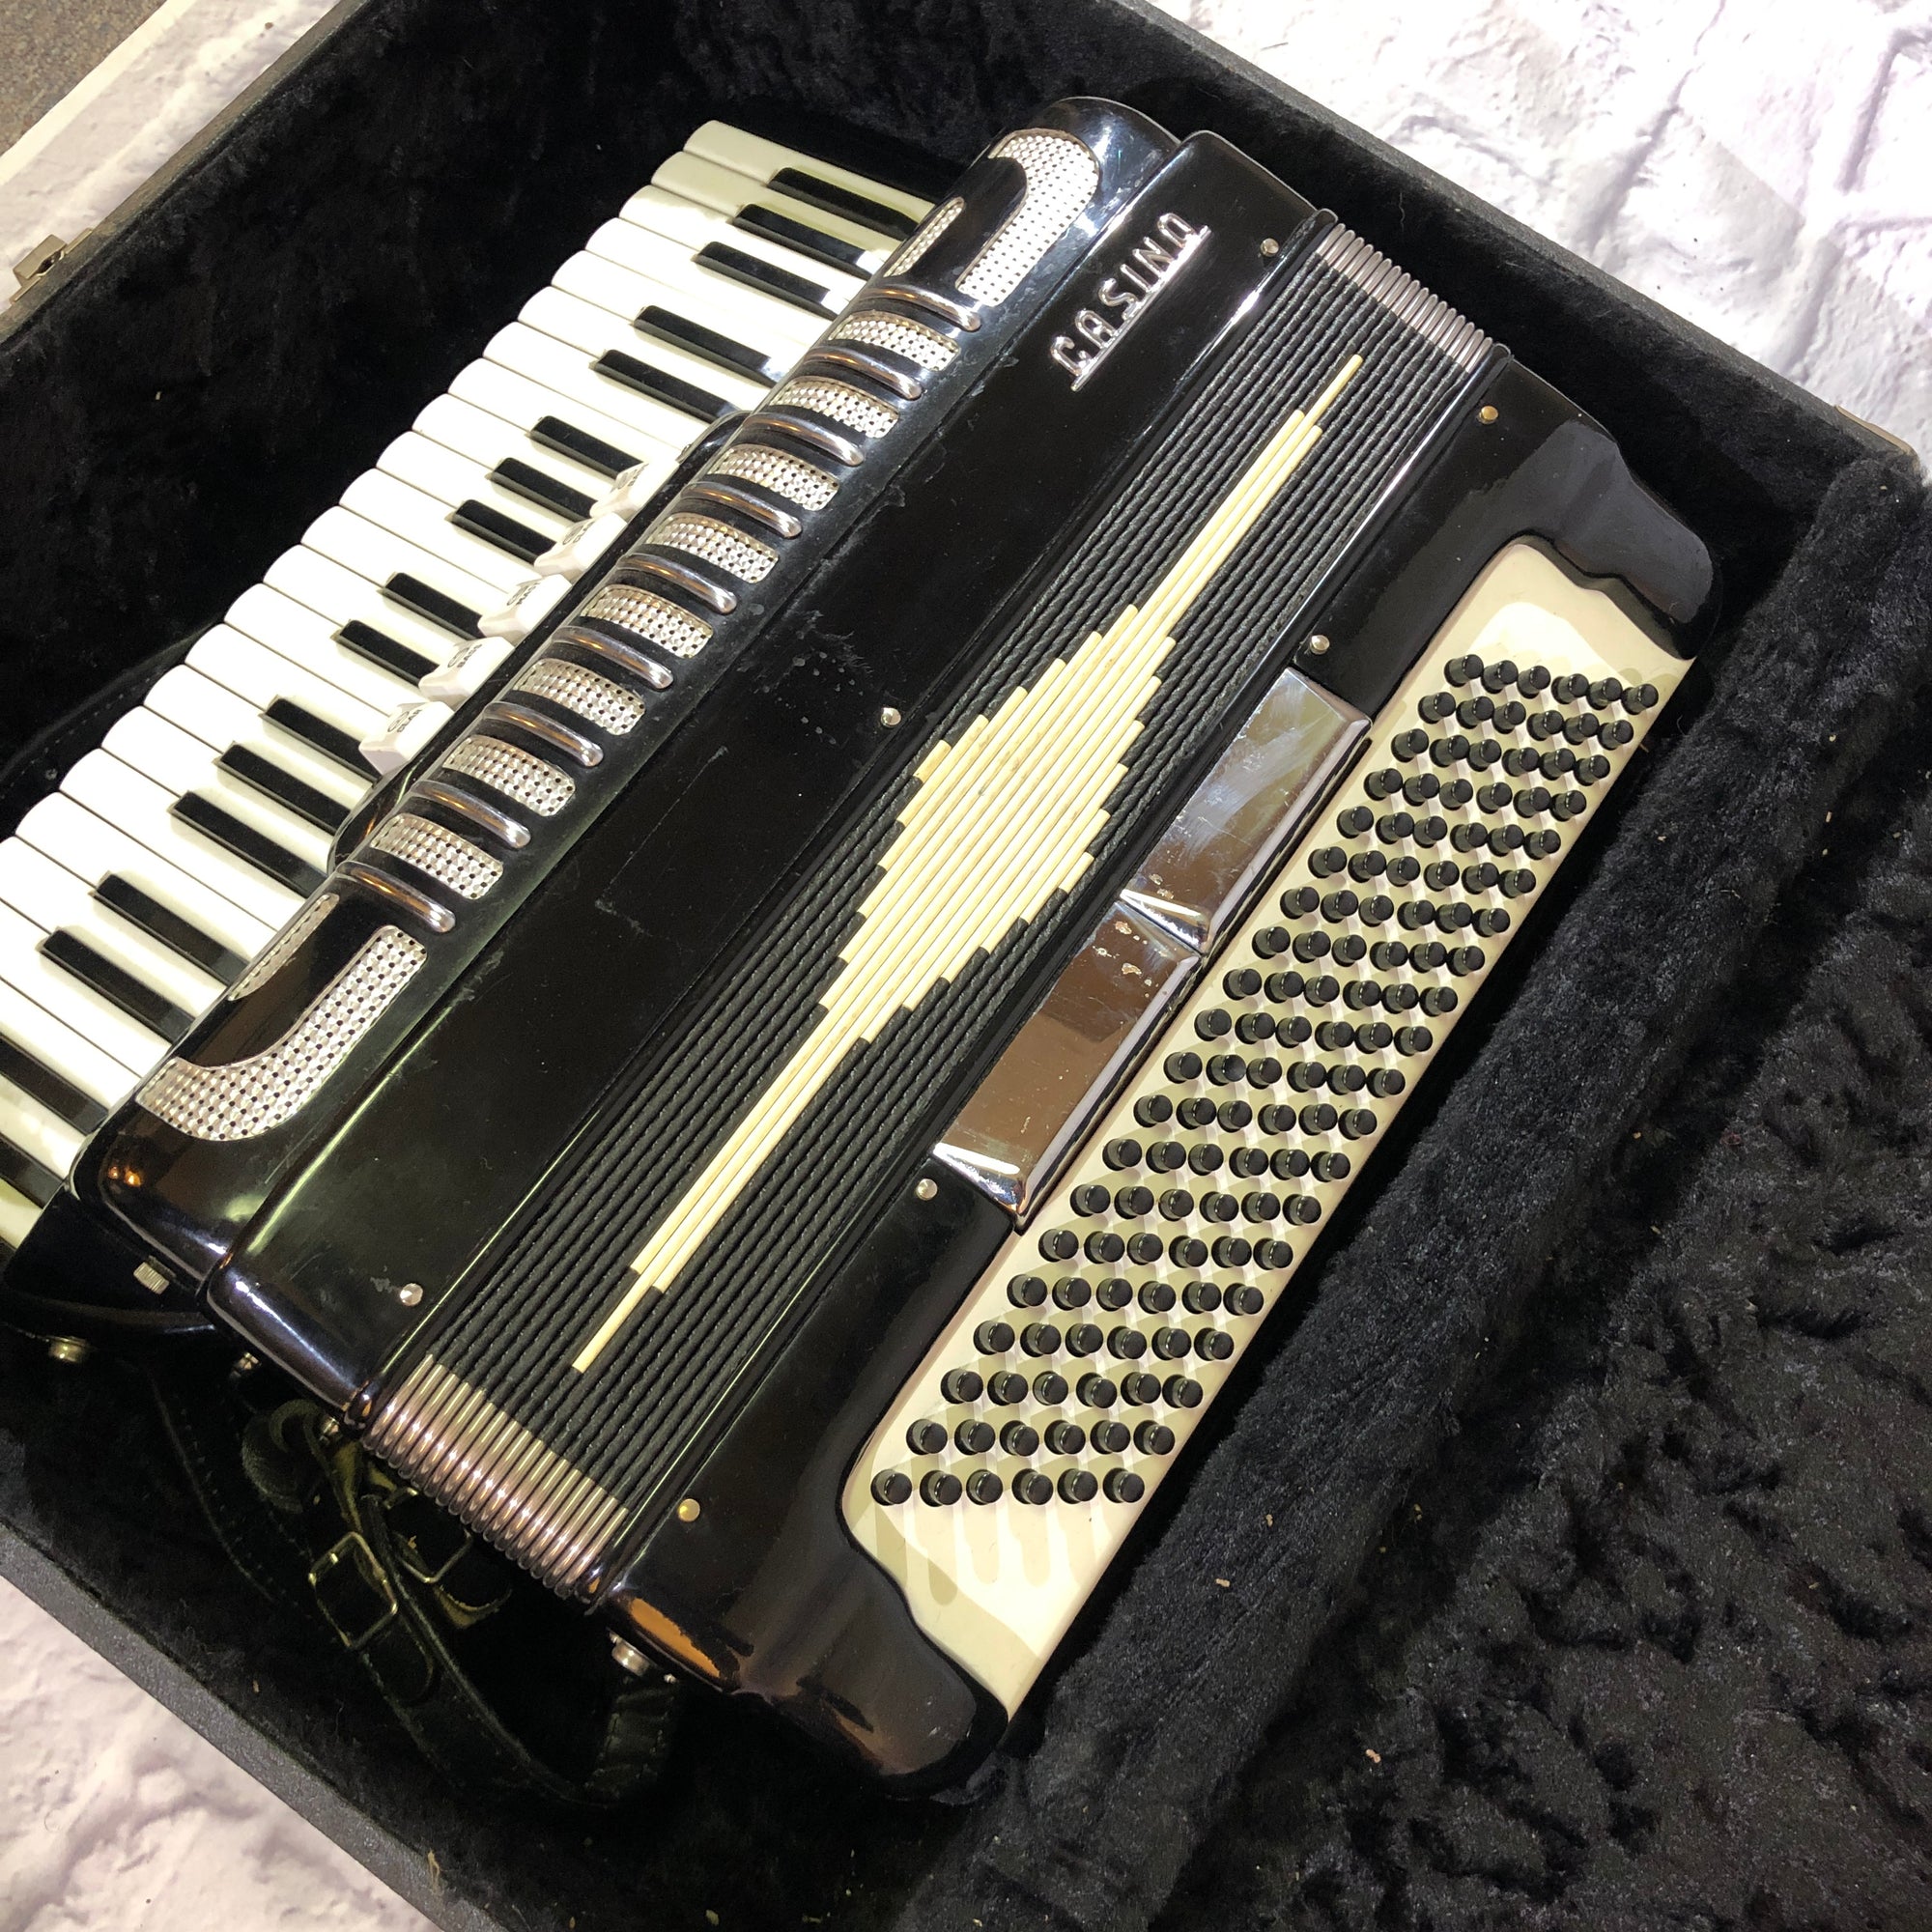 excelsior accordion model number missing